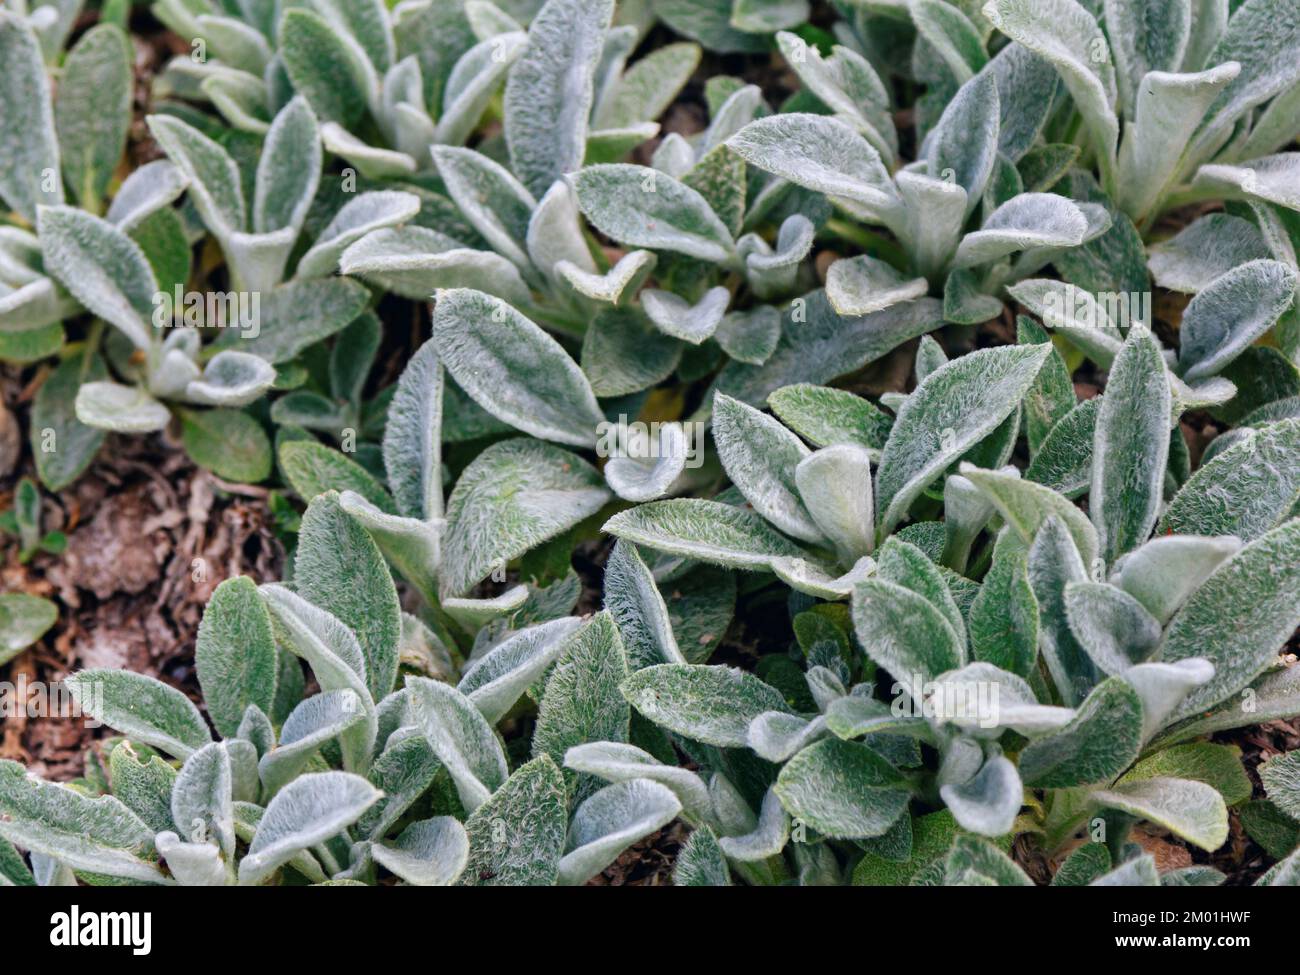 Nahaufnahme Stachys byzantine oder Wollhedgenettle dekorative Blütenpflanze in der Minzfamilie Lamiaceae, die im Garten wächst Stockfoto